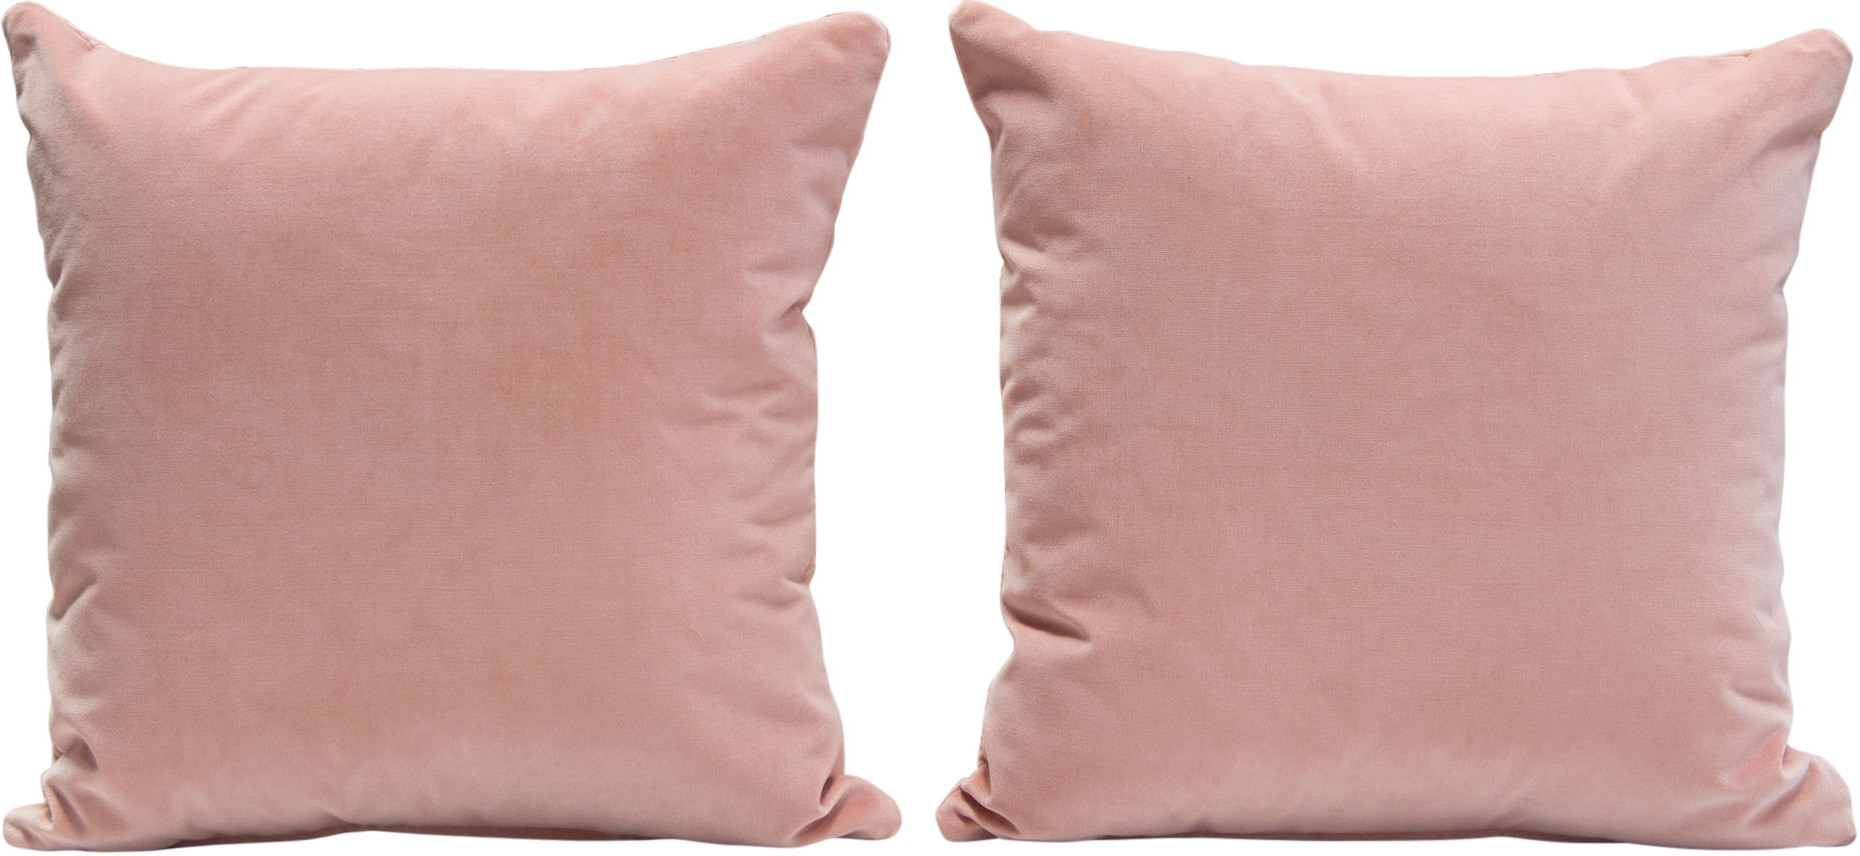 https://cdn.1stopbedrooms.com/media/catalog/product/s/e/set-of-2-16-inch-square-accent-pillows-in-blush-pink-velvet_qb13310171.jpg